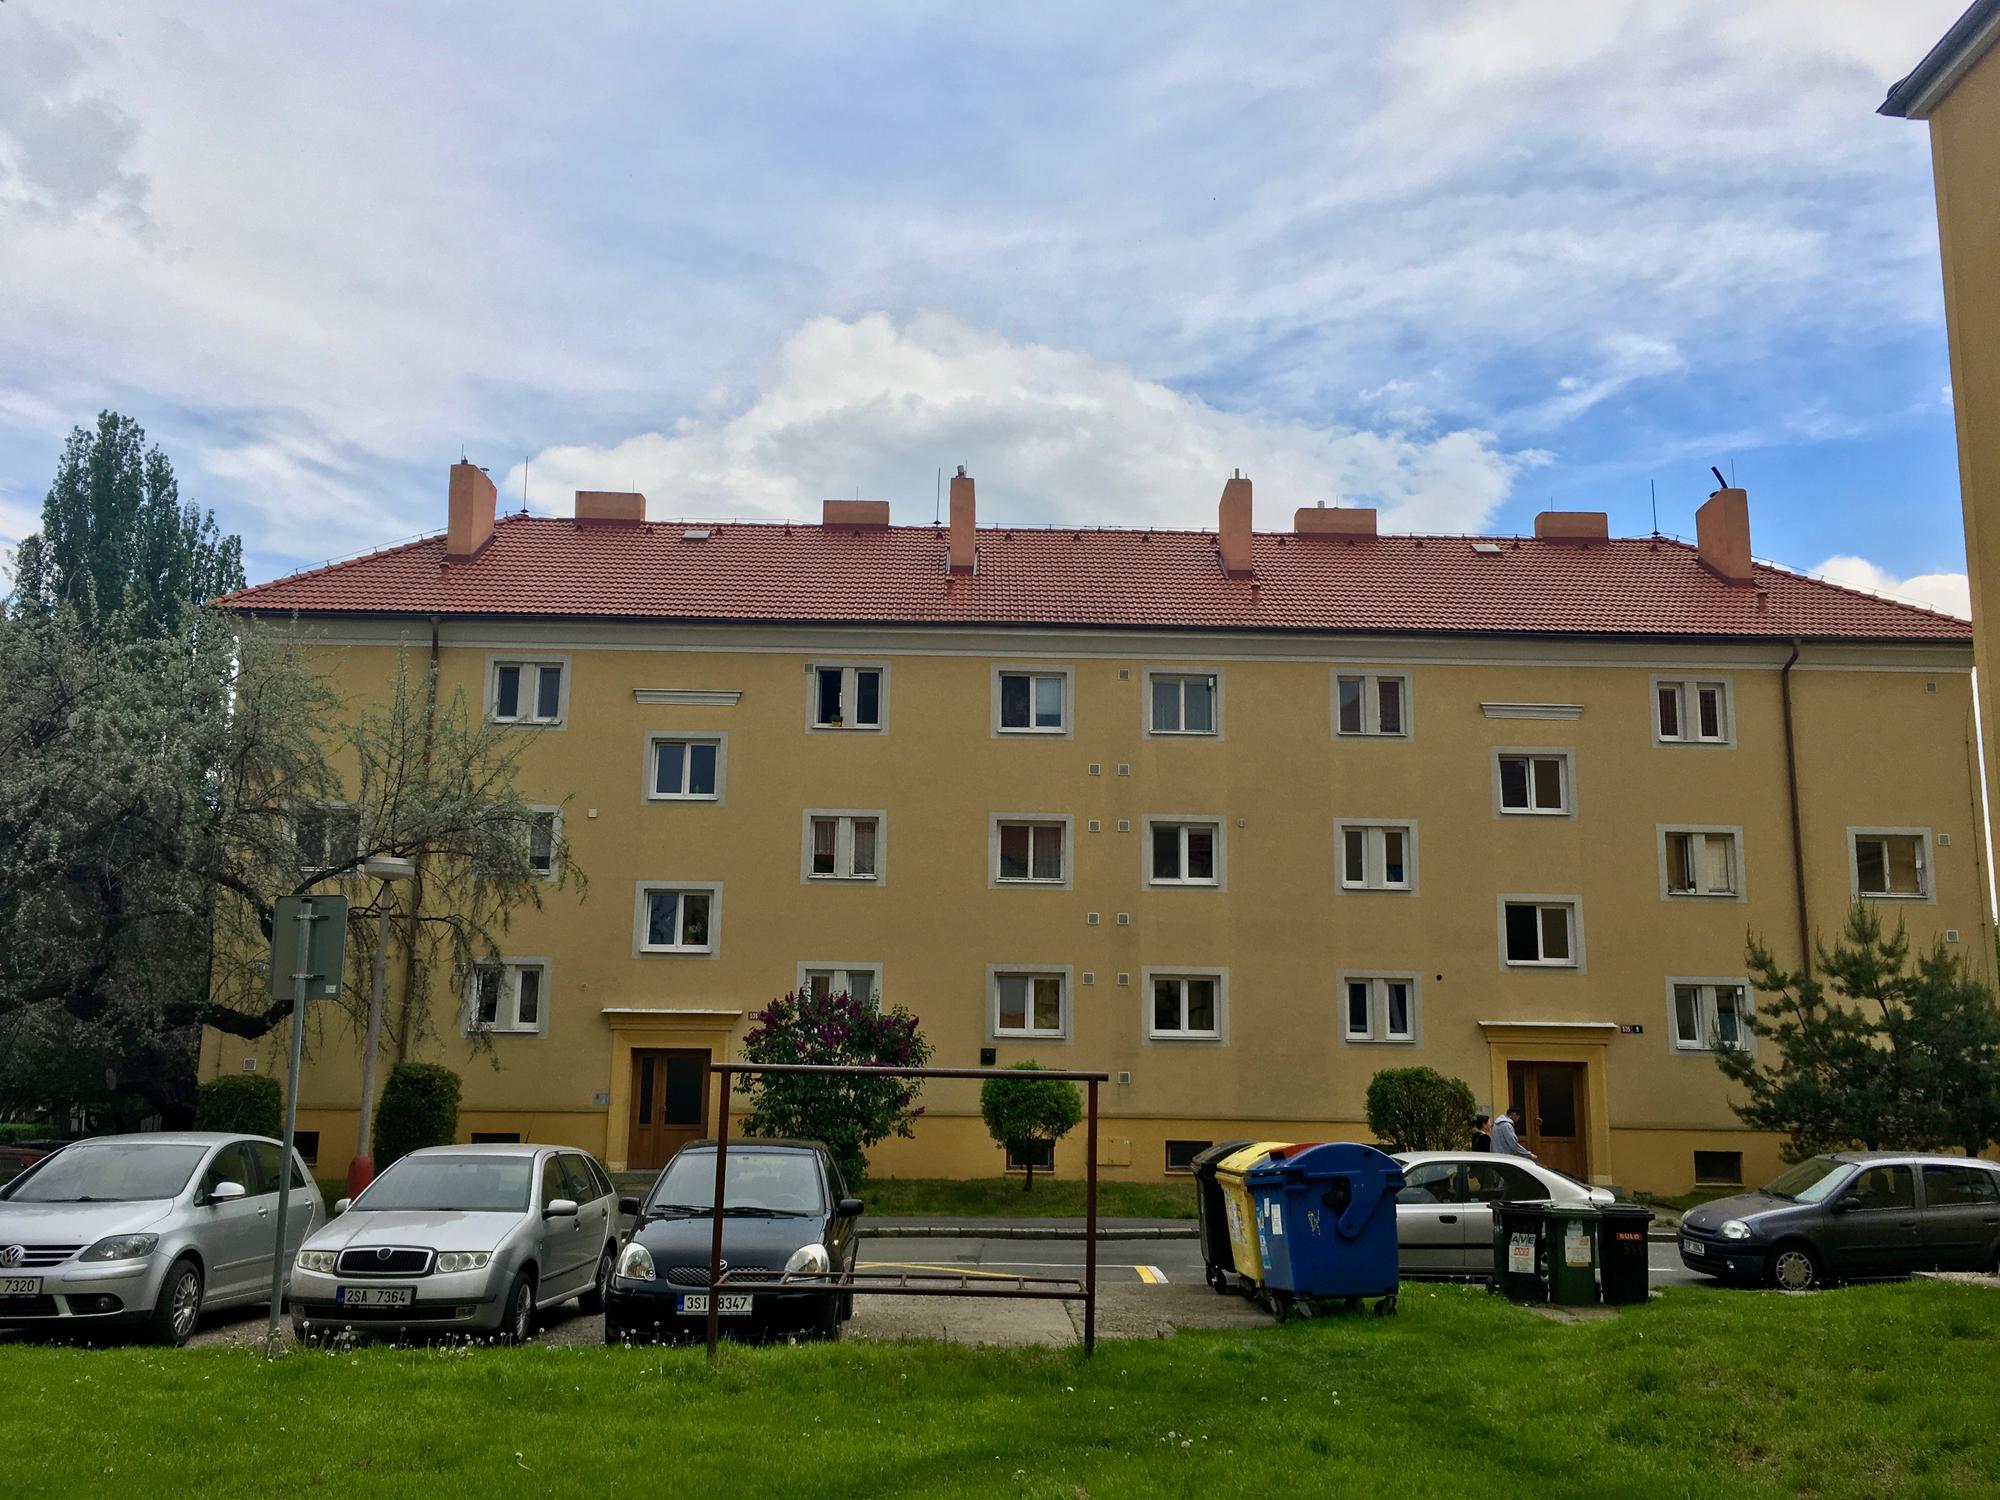 🇨🇿 Кутна-Гора, Чехия, май 2017.